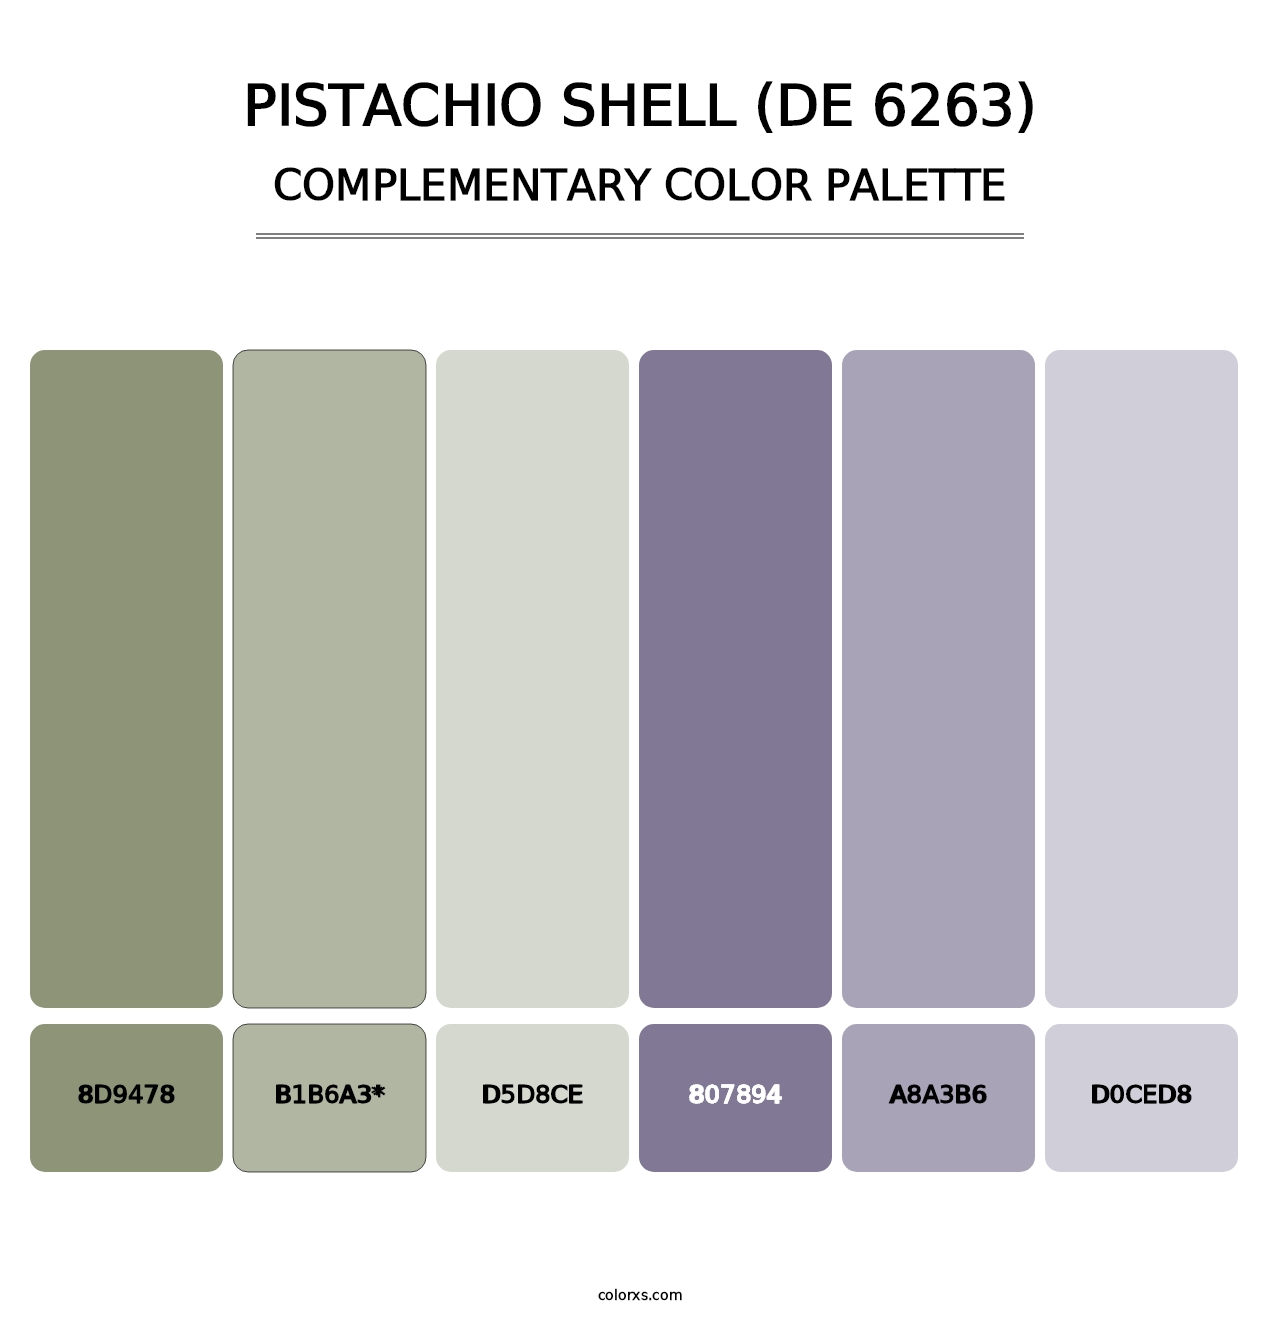 Pistachio Shell (DE 6263) - Complementary Color Palette